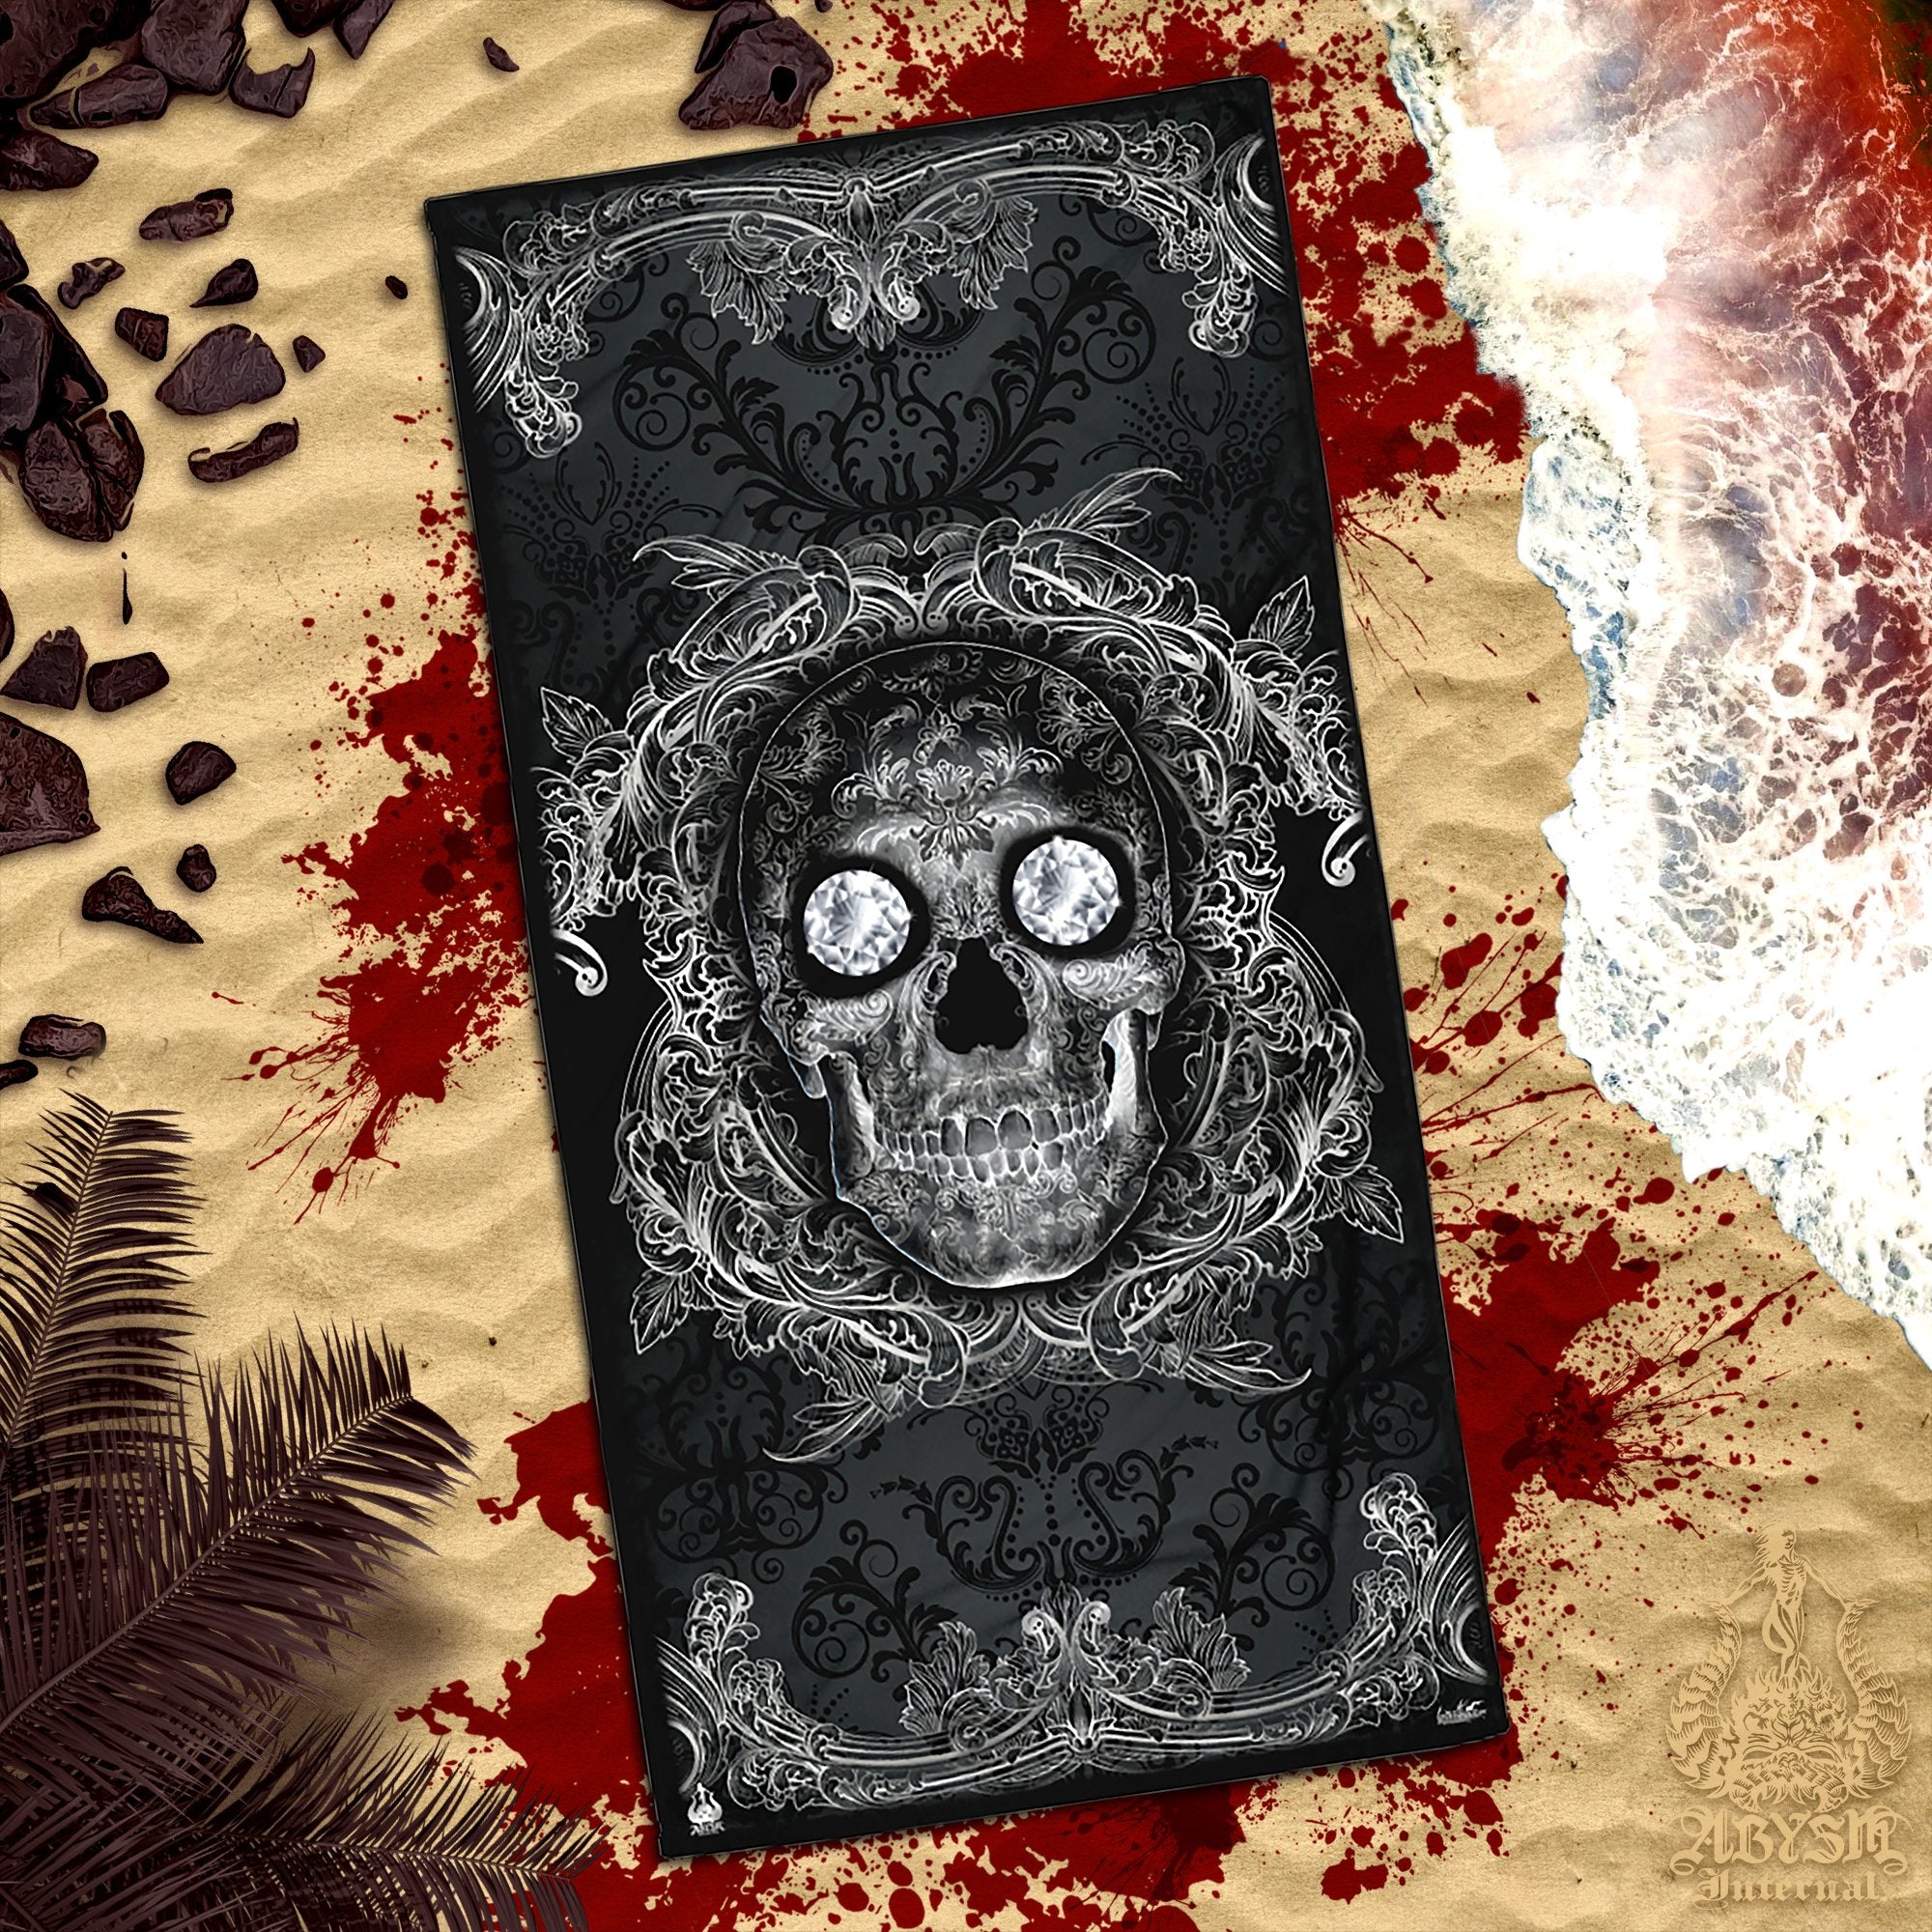 ALL Skull Beach Towel, Macabre Art, Sugar Skull, Day of the Dead, Dia de los Muertos - 14 Colors - Abysm Internal